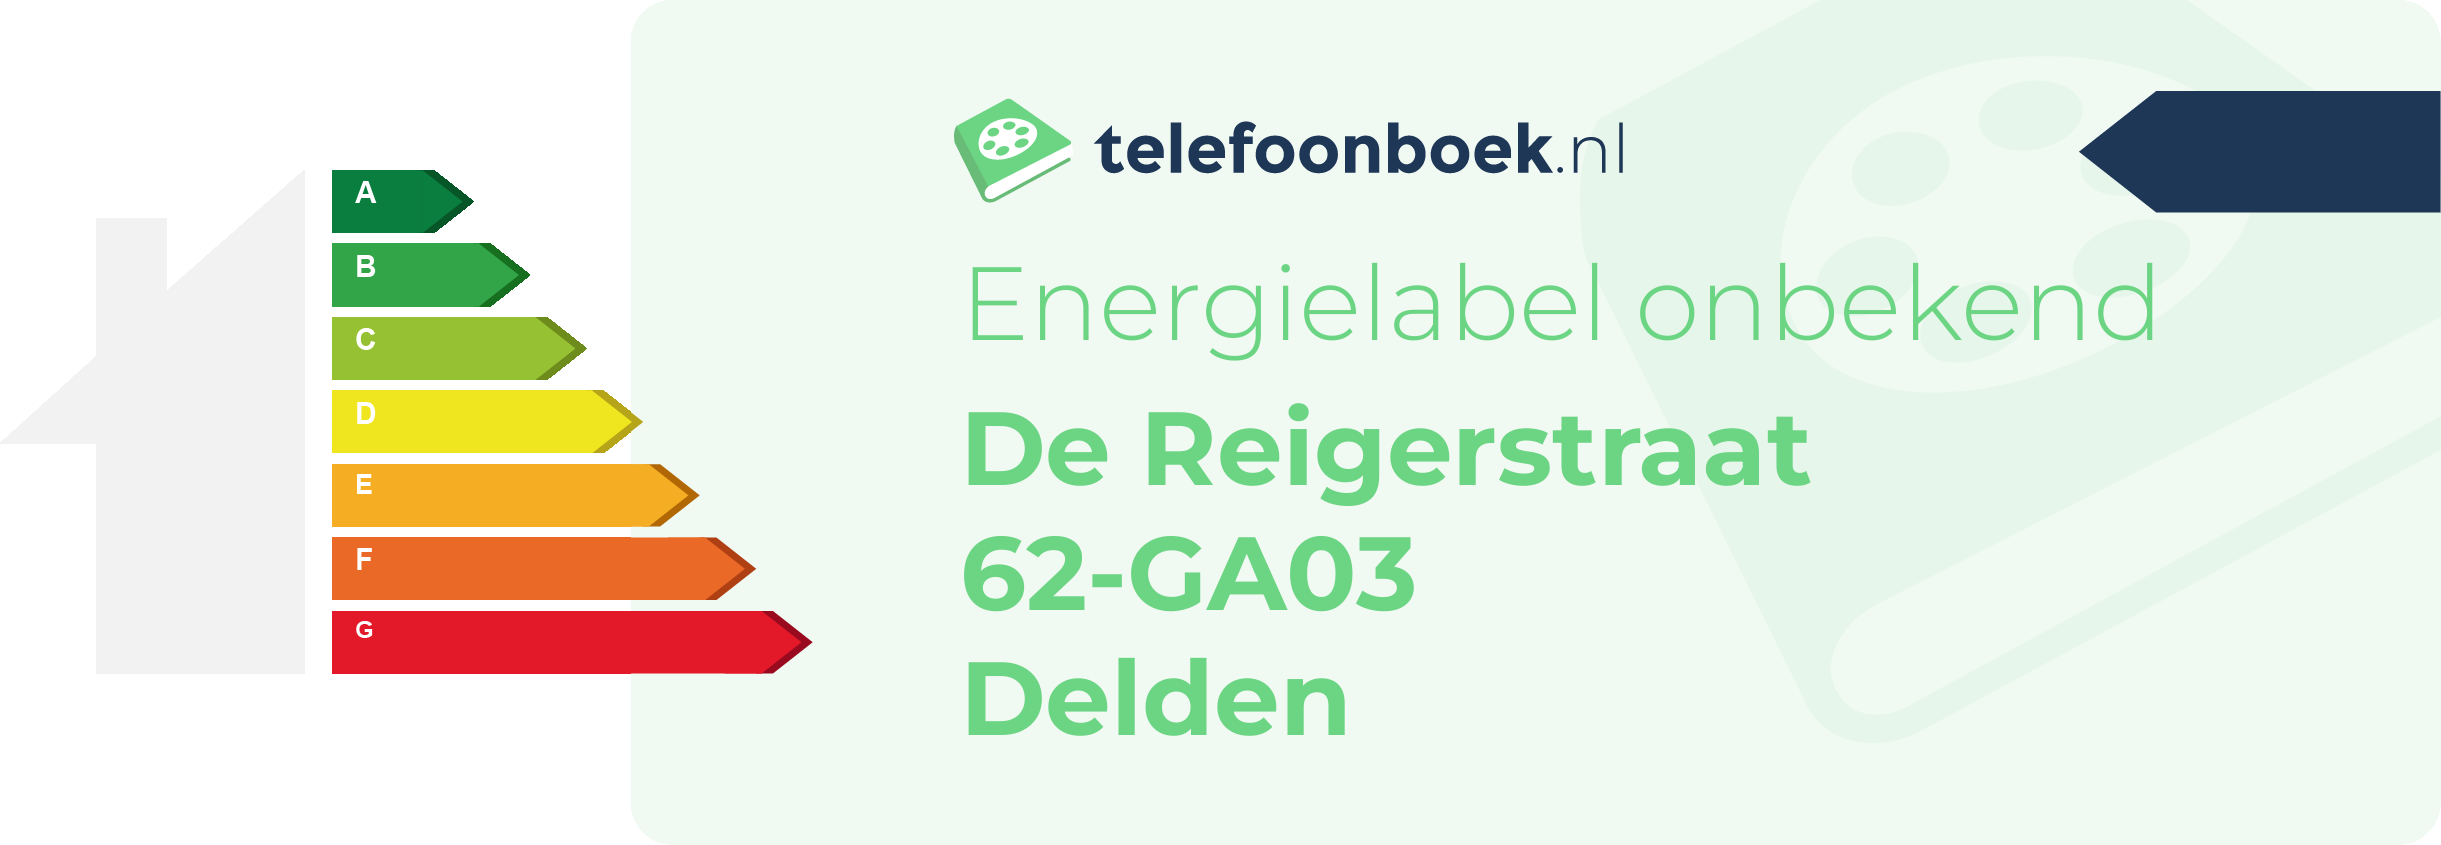 Energielabel De Reigerstraat 62-GA03 Delden